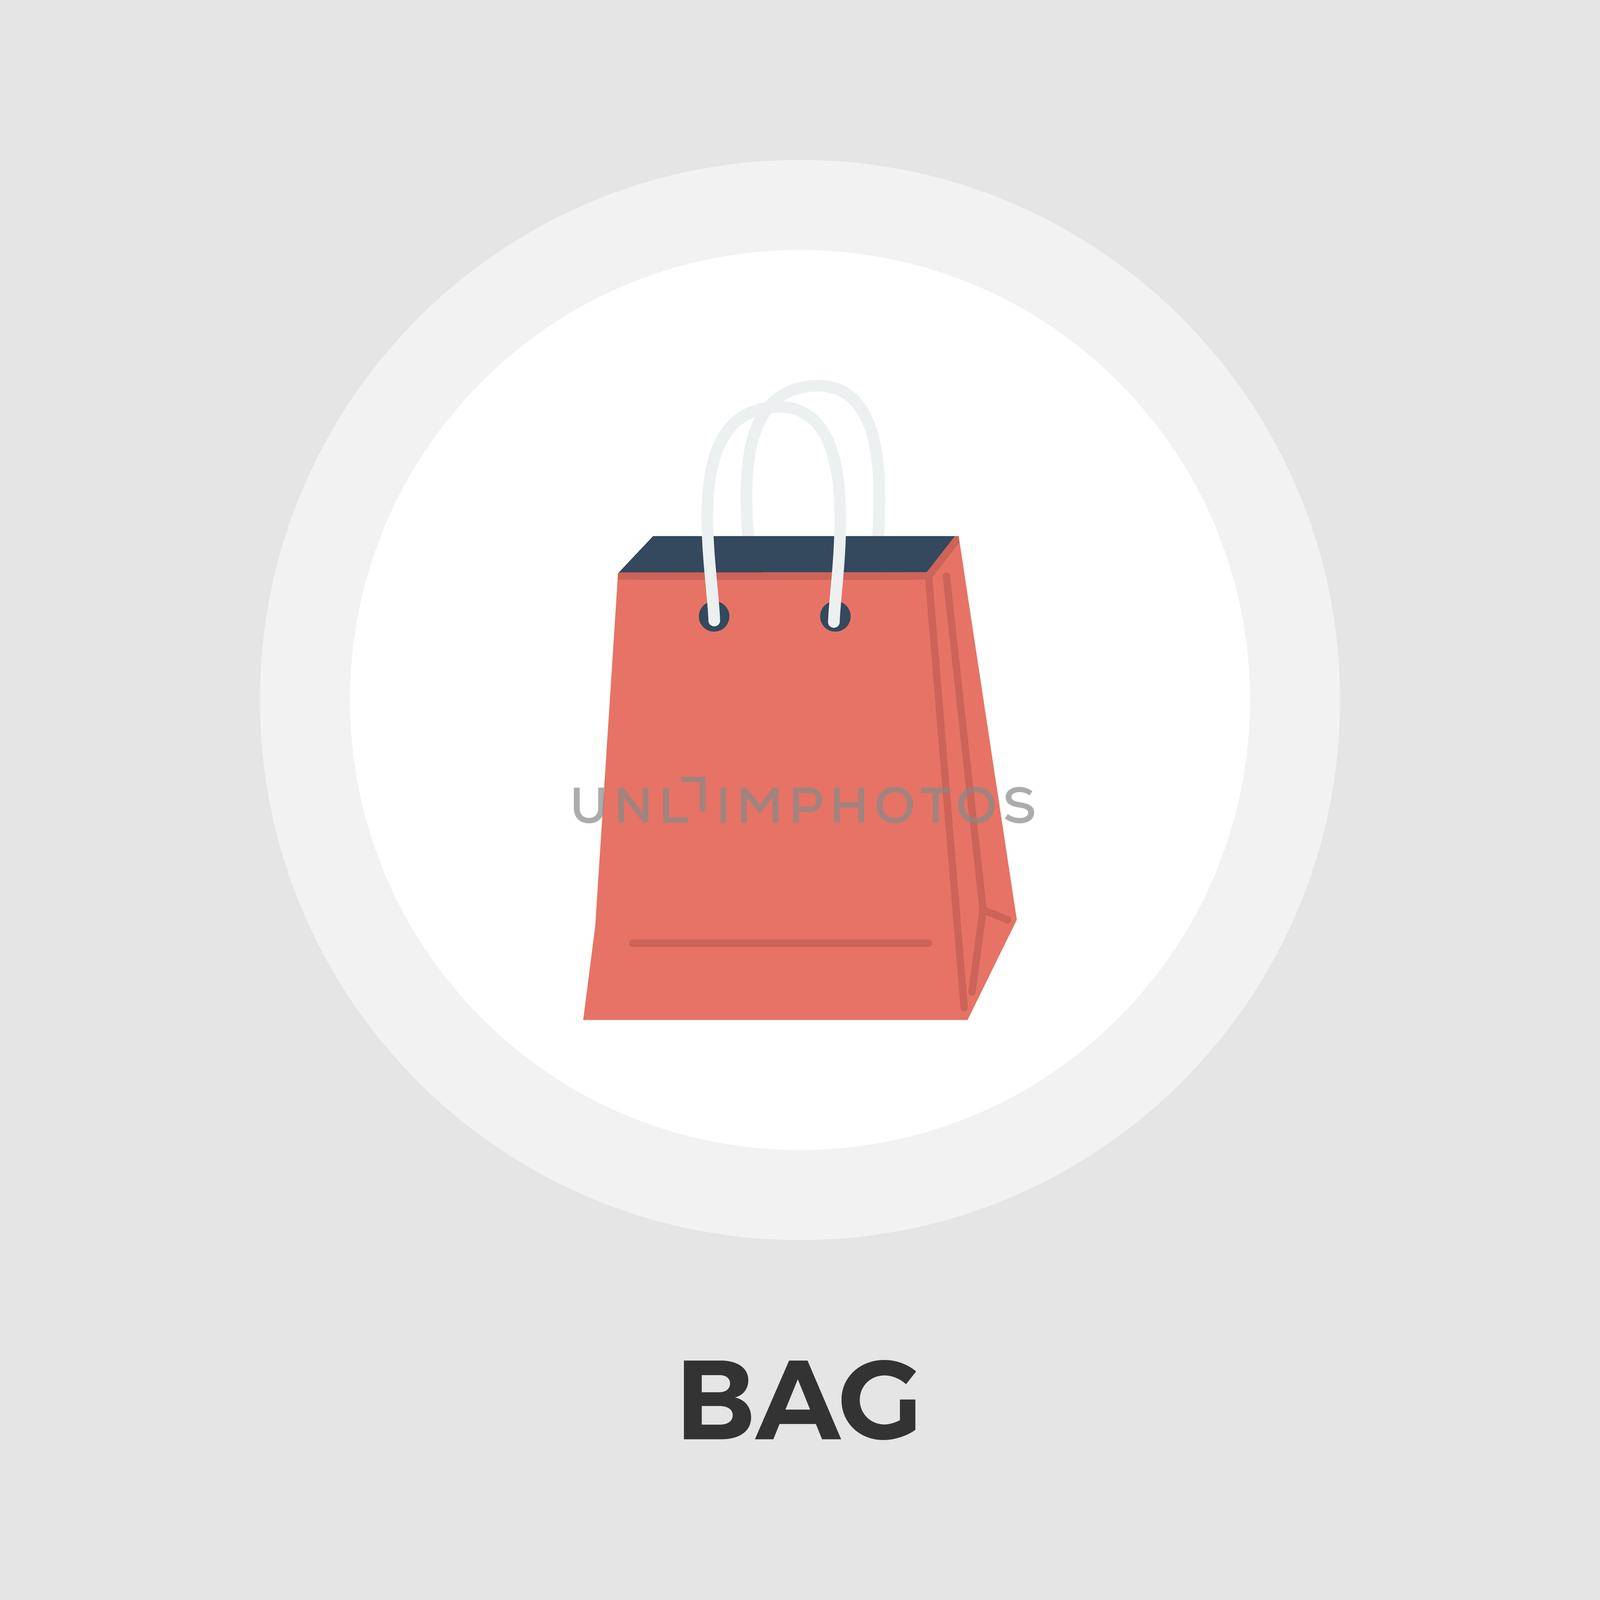 Bag store single icon. by smoki